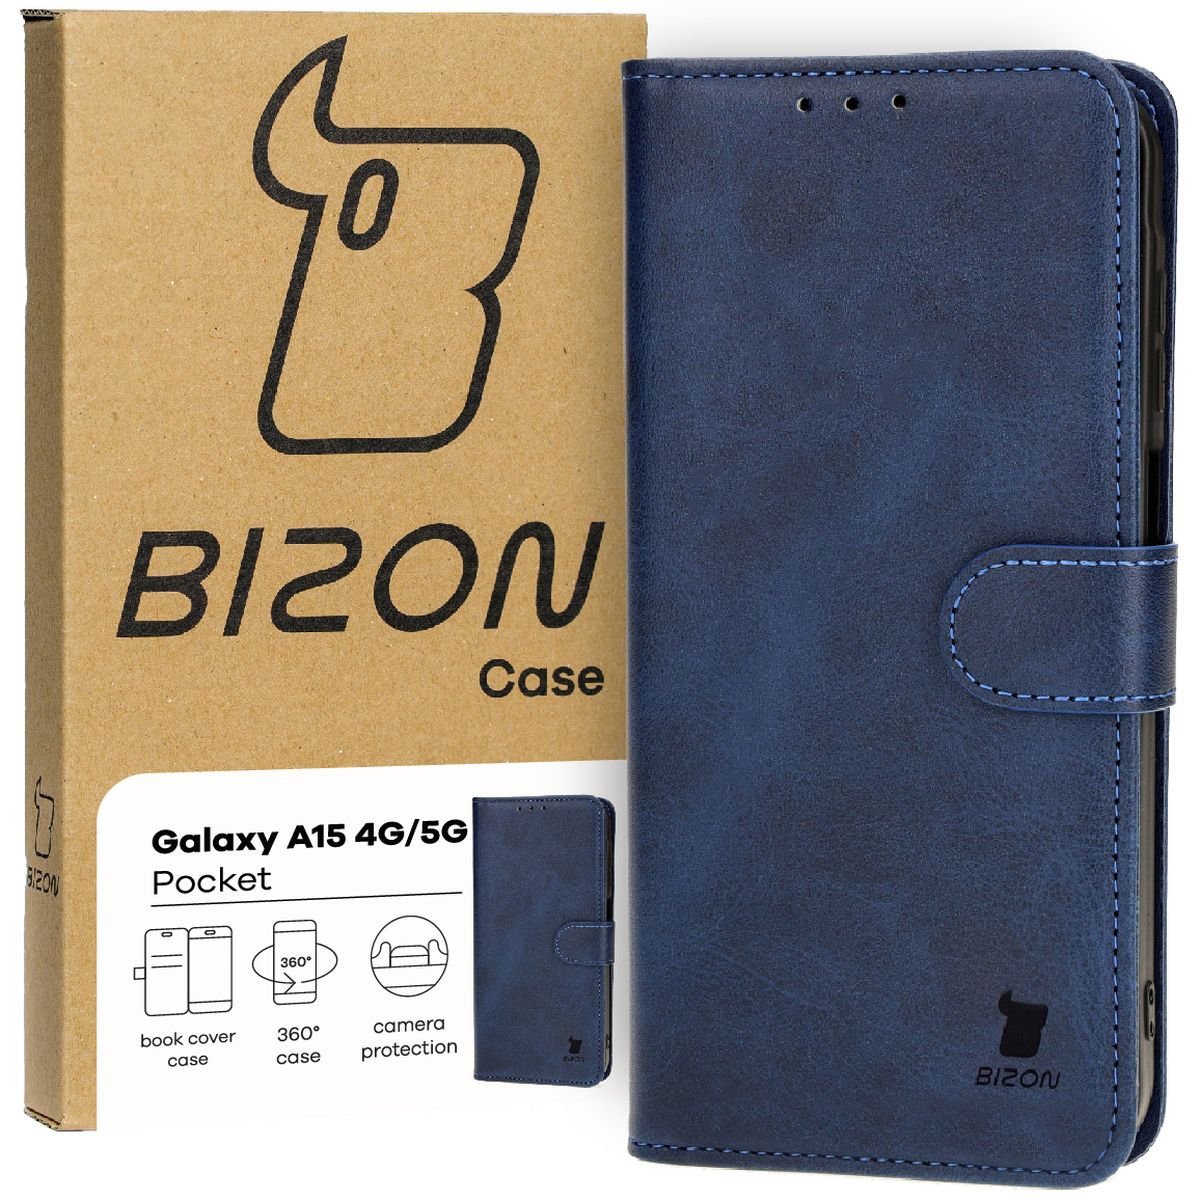 Schutzhülle für Galaxy A15 4G/5G, Bizon Case Pocket, Dunkelblau